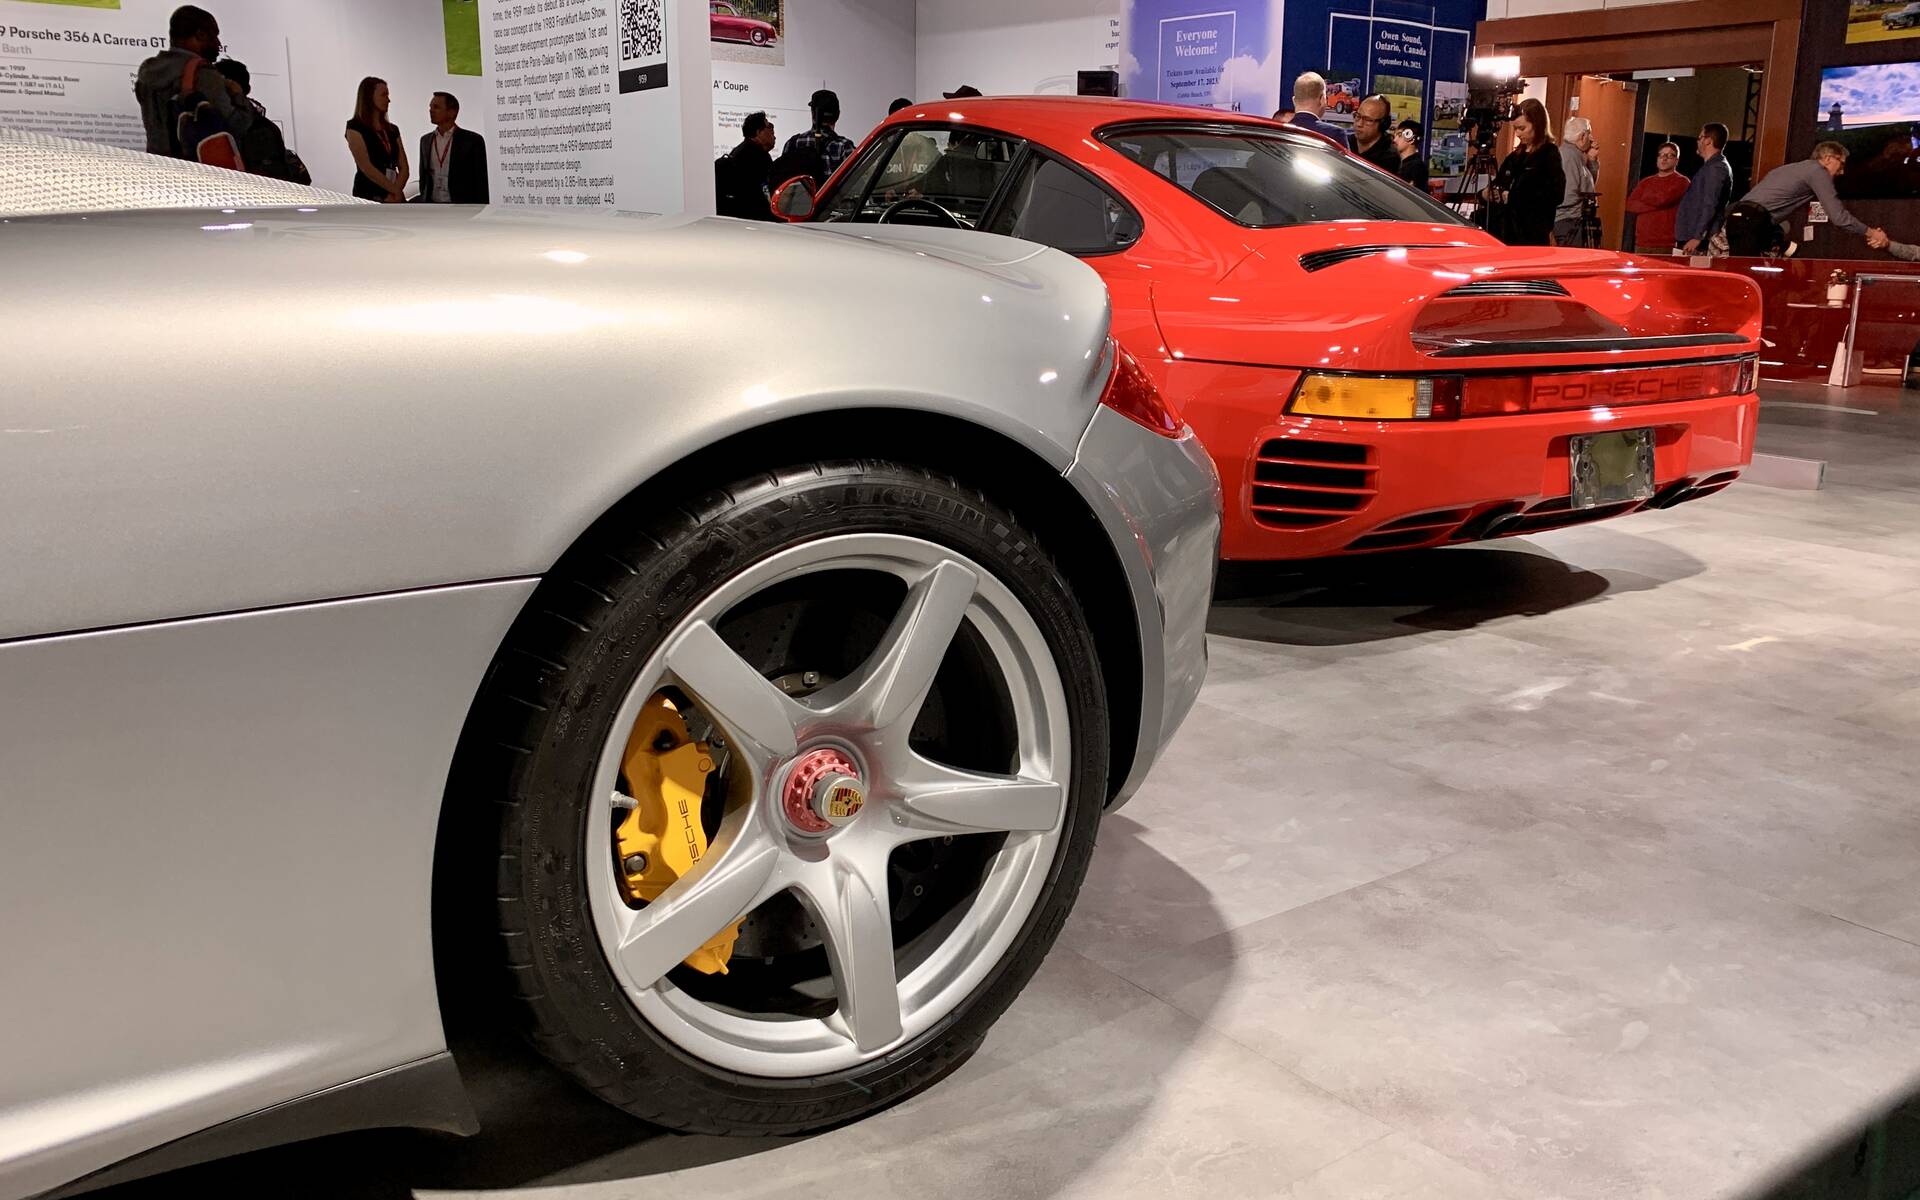 Salon de l’auto de Toronto : soulignons le 75e anniversaire de Porsche 562547-salon-de-l-auto-de-toronto-hommage-au-75e-anniversaire-de-porsche